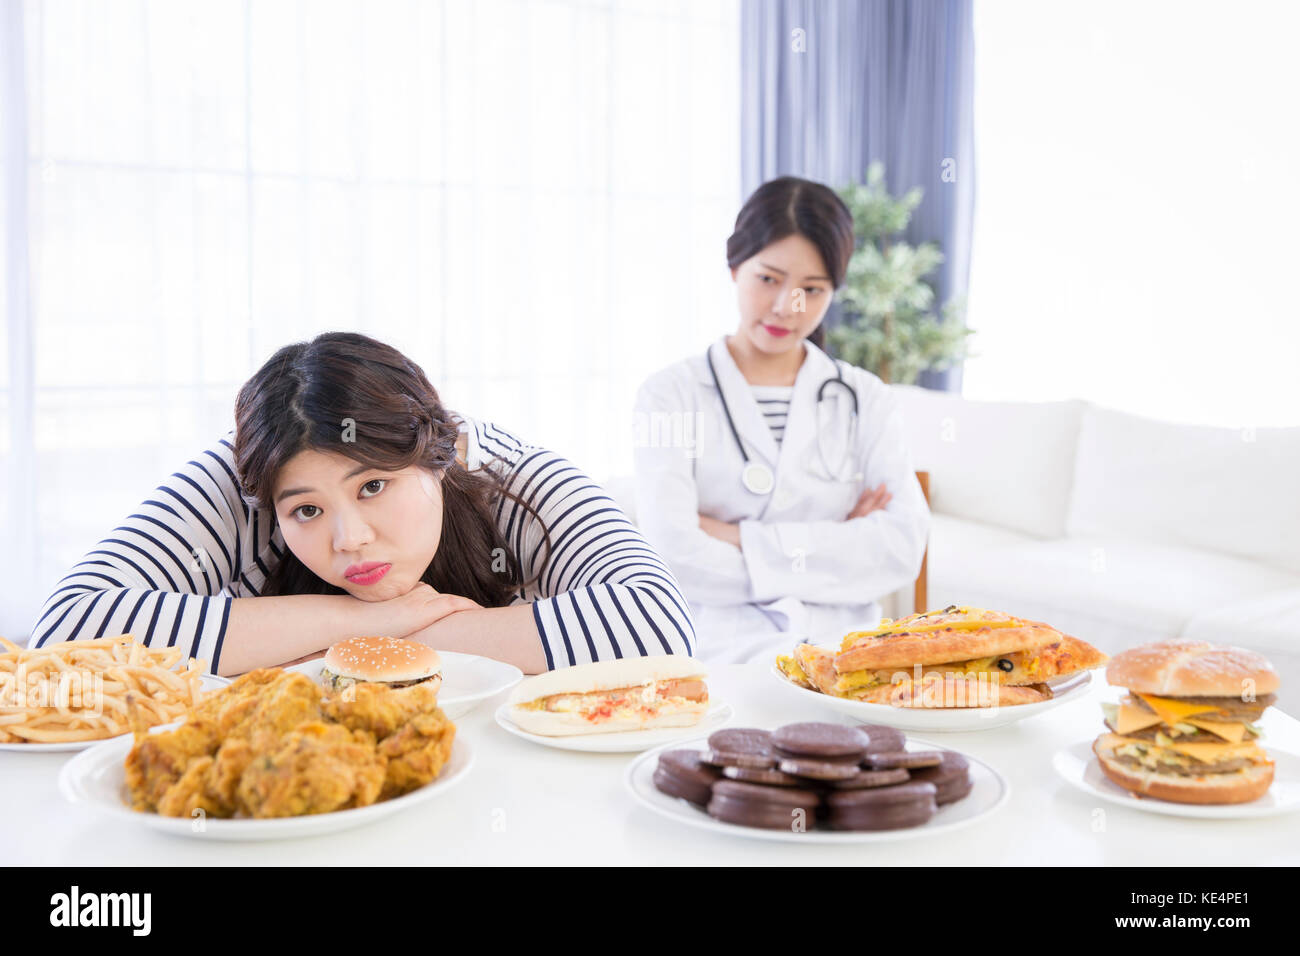 Lo stile di vita della donna grassa e la sua nutrizionista Foto Stock